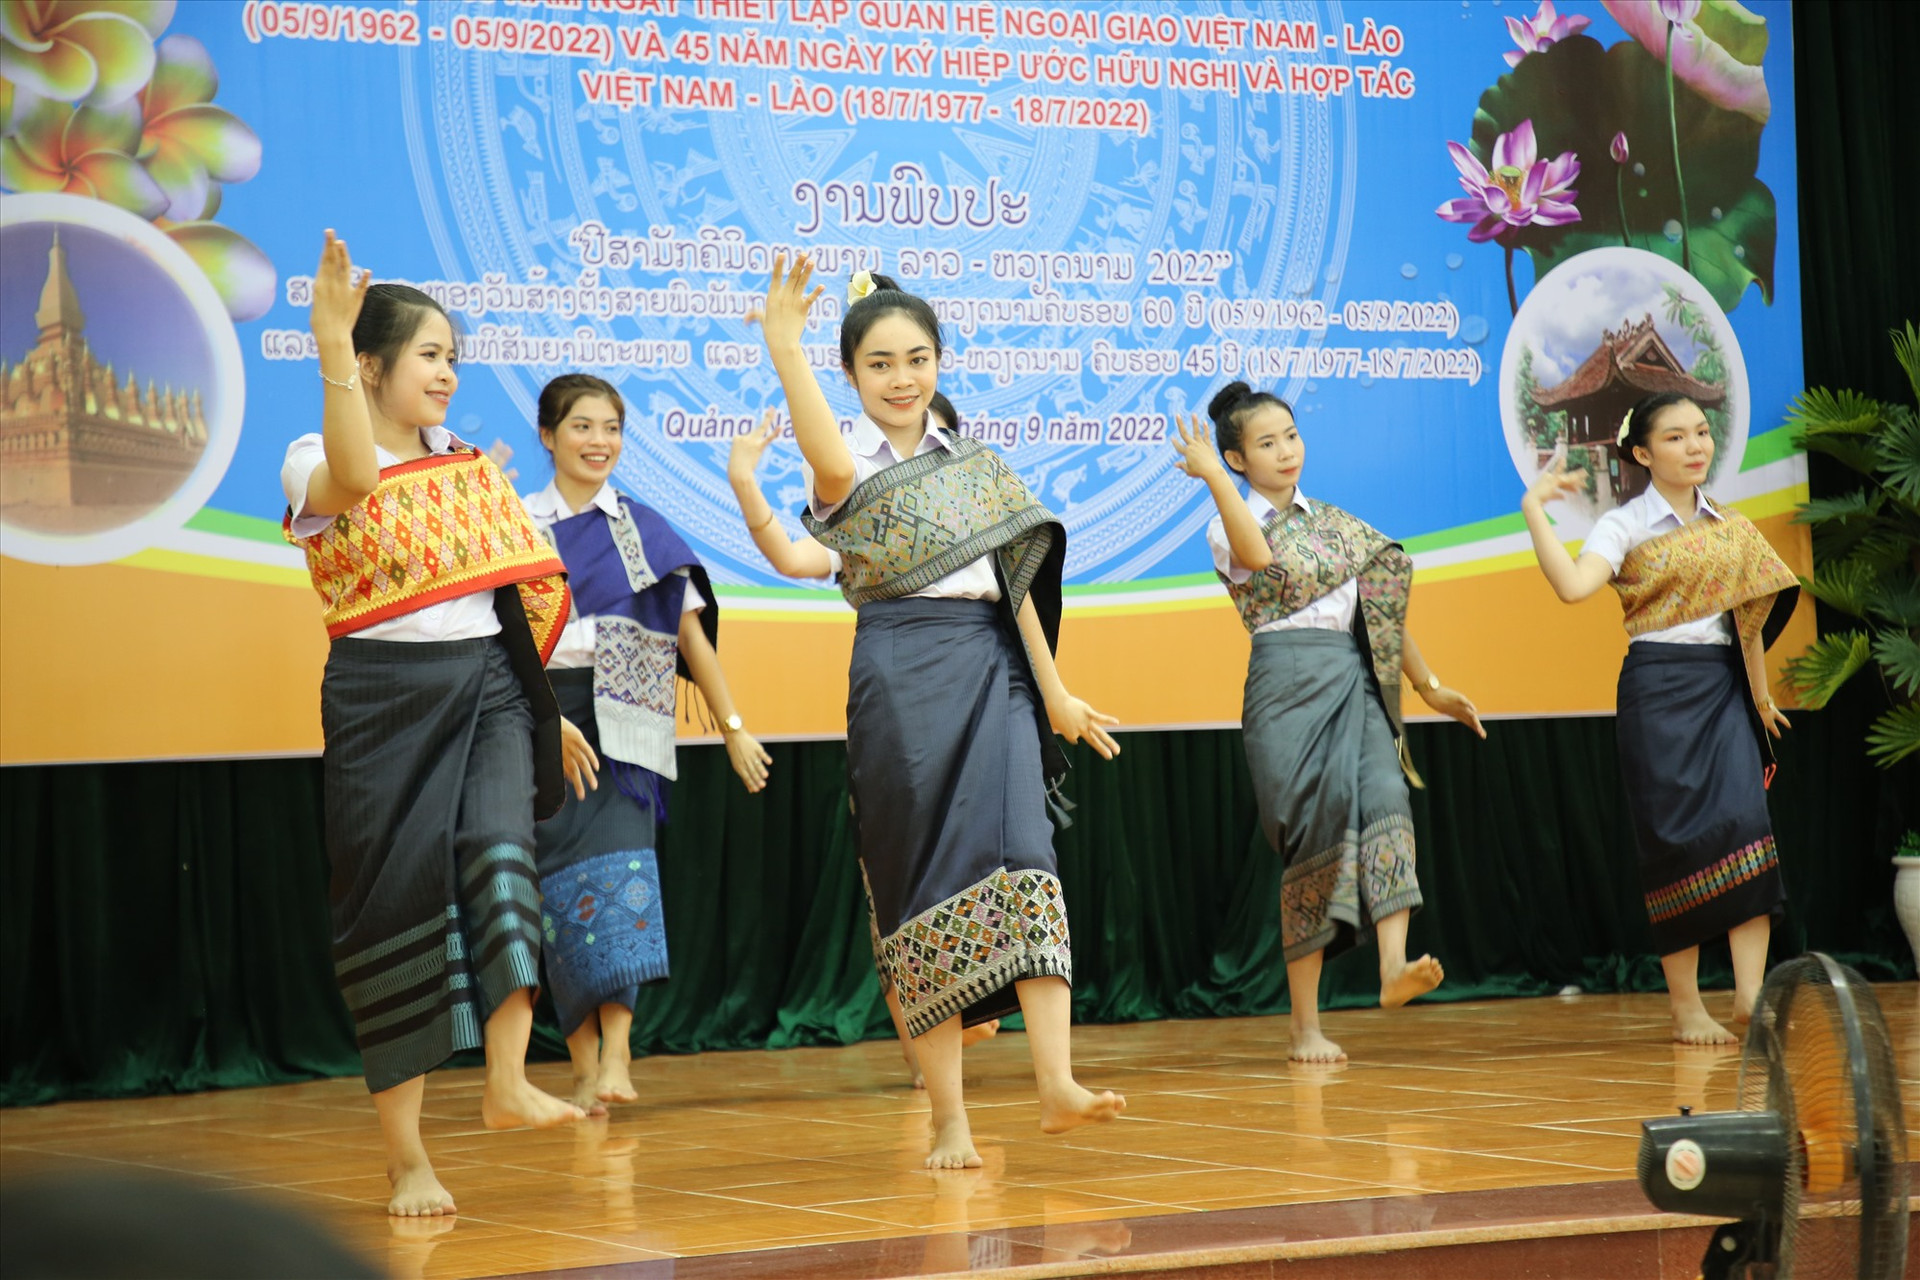 Các du học sinh Lào tại Quảng Nam bieuẻ diễn điệu múa lăm-vông truyền thống. Ảnh: A.N